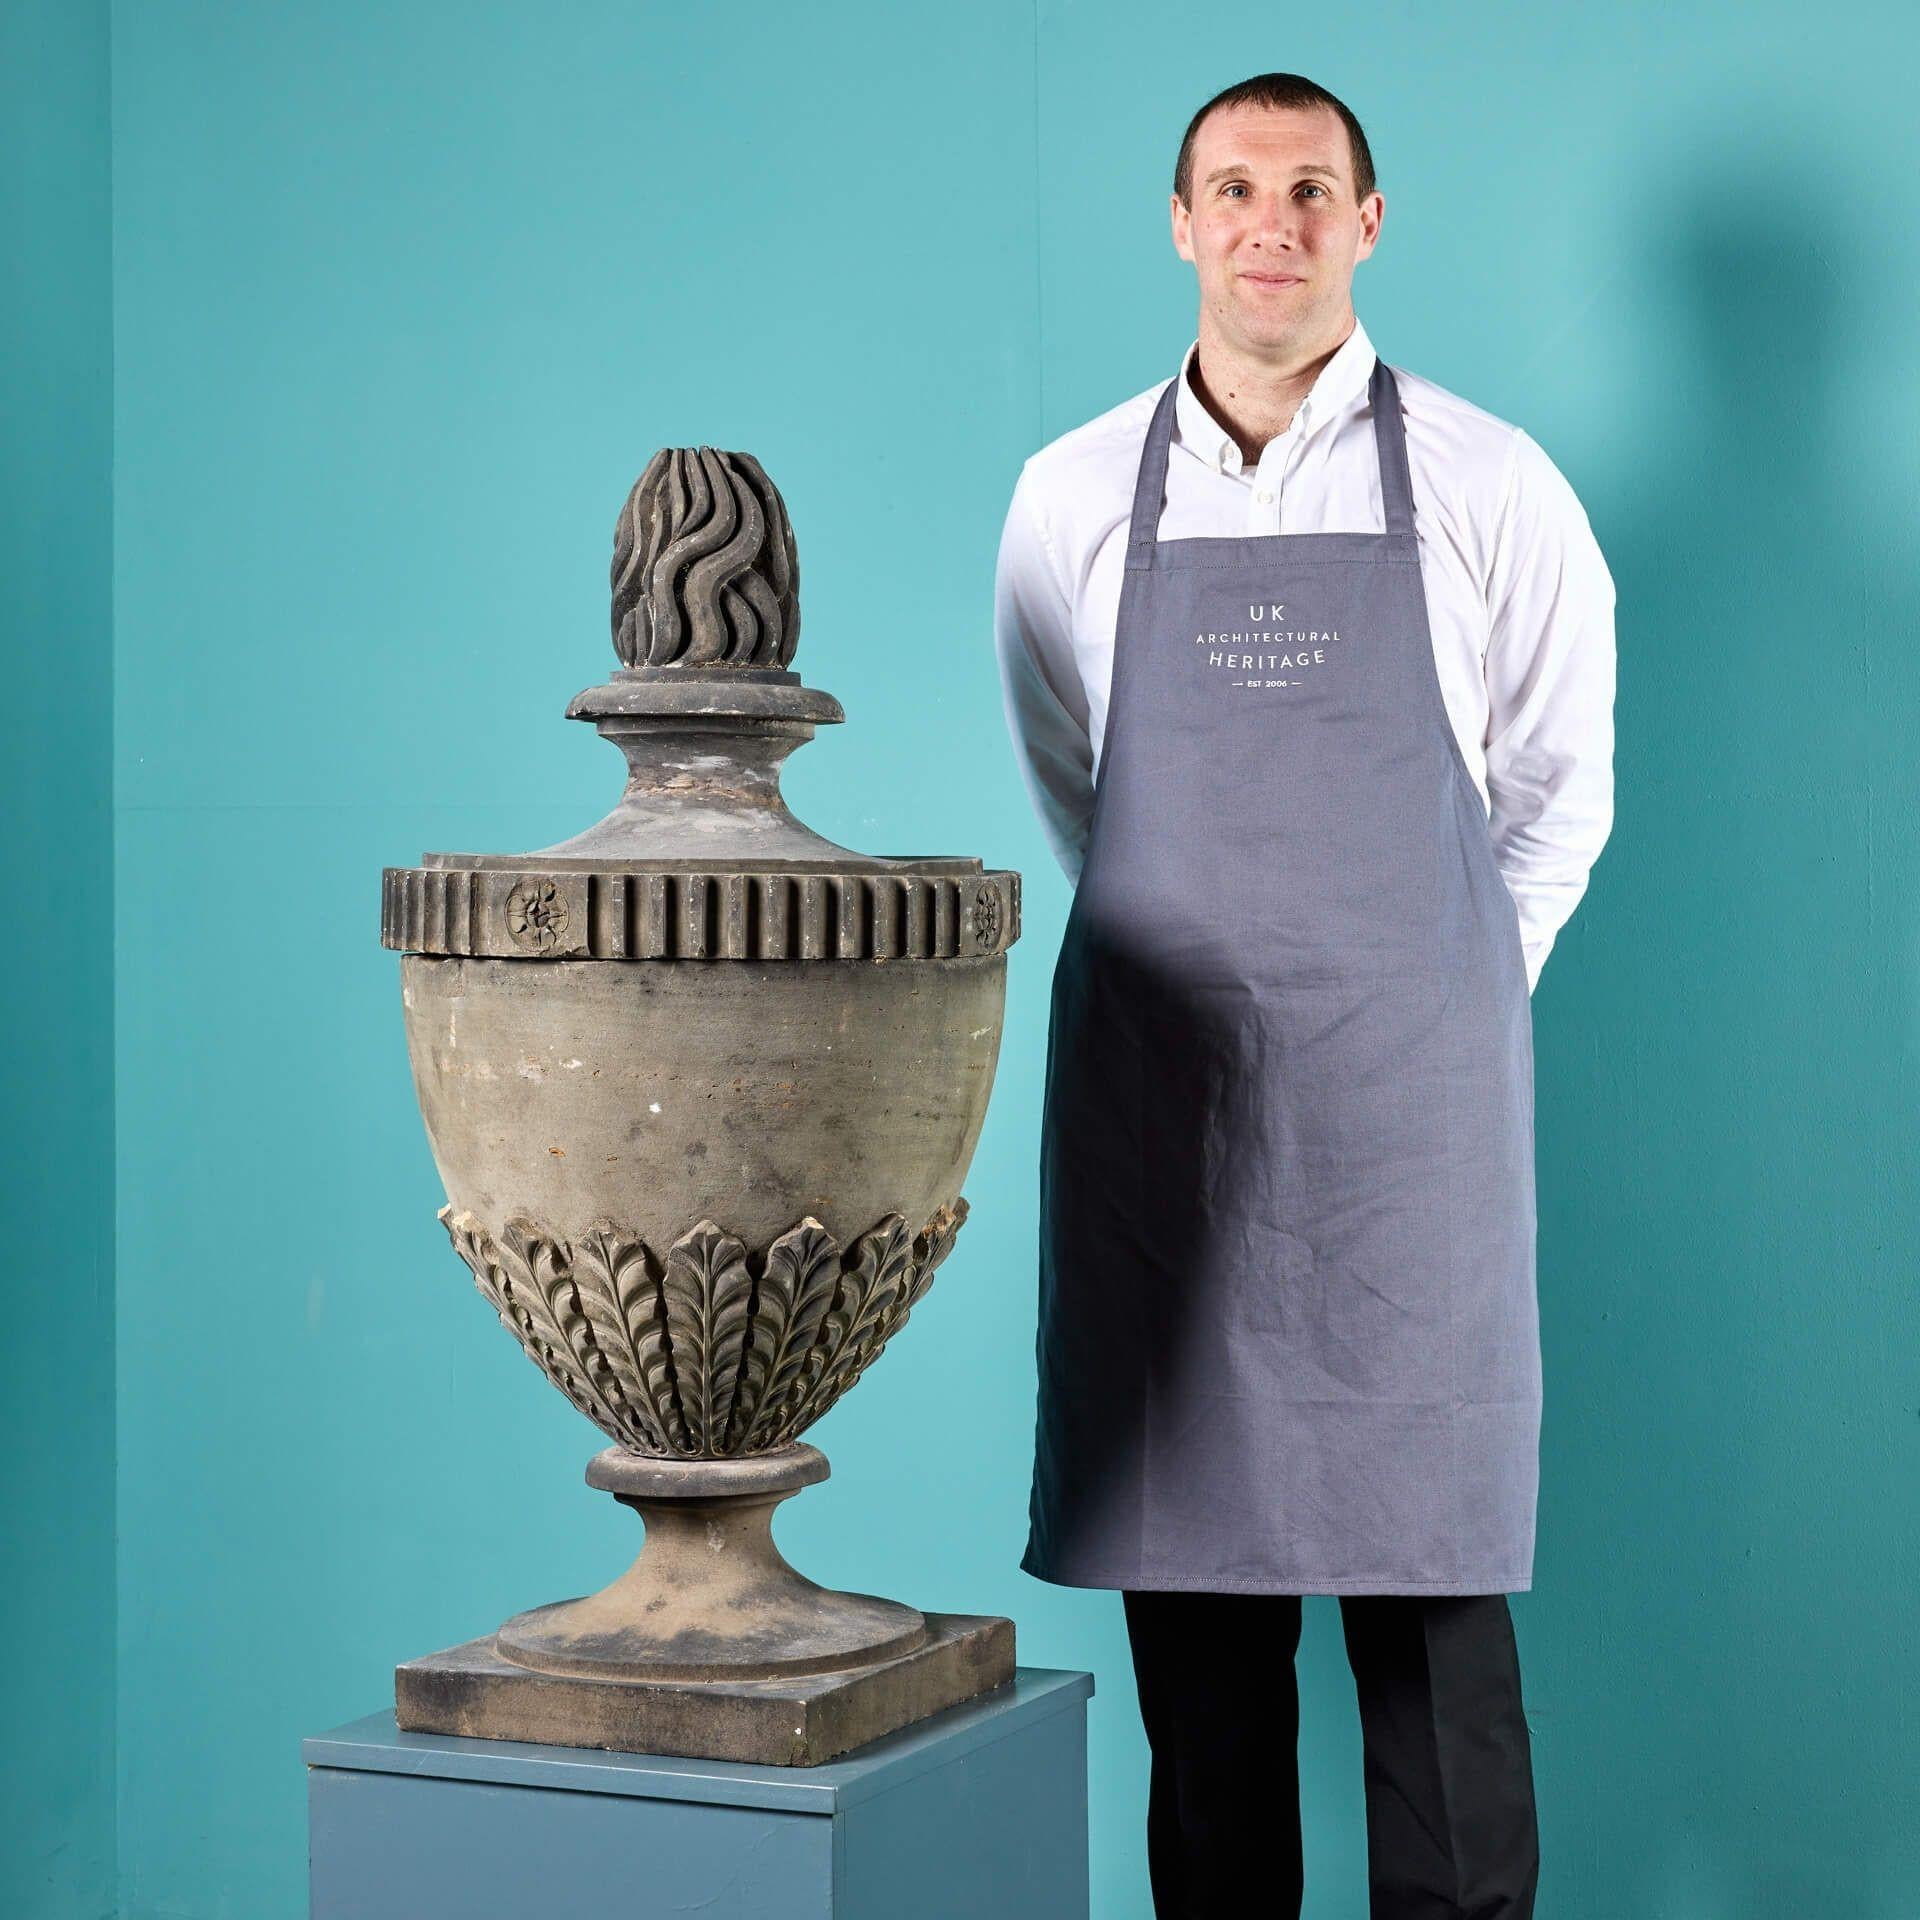 Grande urne de jardin antique sculptée de style néoclassique datant du milieu du 19e siècle. Cette urne en grès est l'une des nombreuses urnes que nous vendons et qui proviennent d'un domaine situé à l'ouest de l'Écosse. Veuillez nous contacter pour